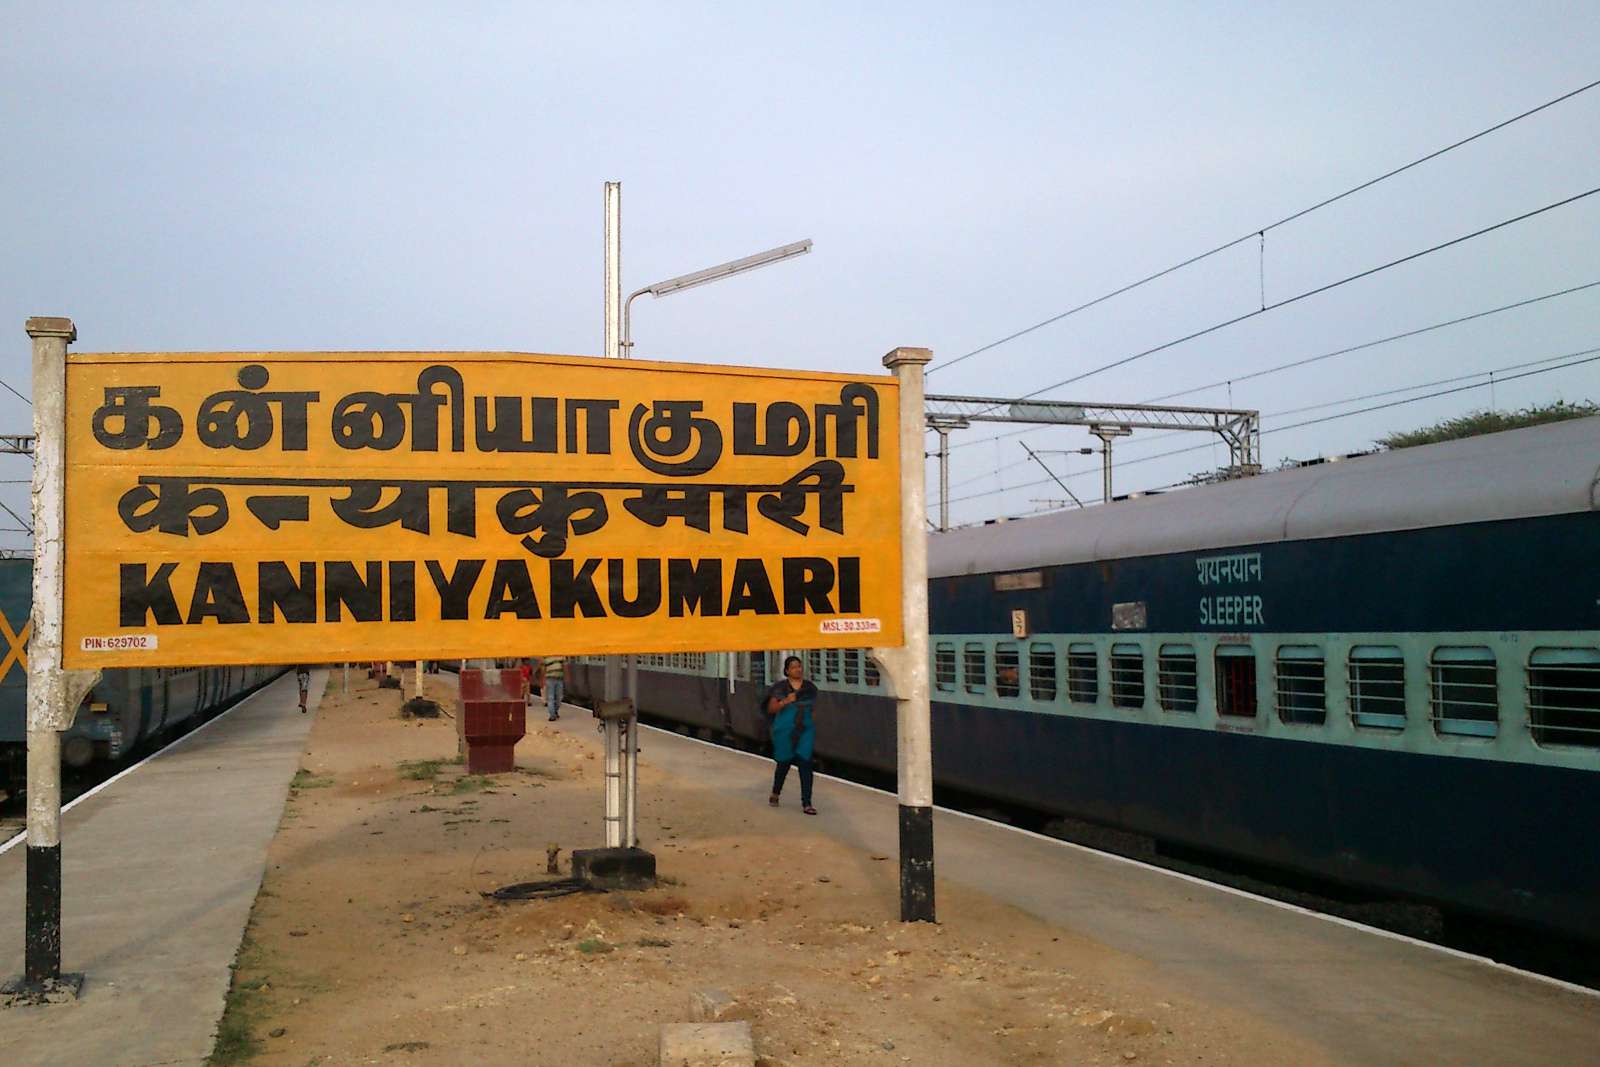 Gran cartel naranja de la estación de tren de Kanyakumari con un tren cama en las vías